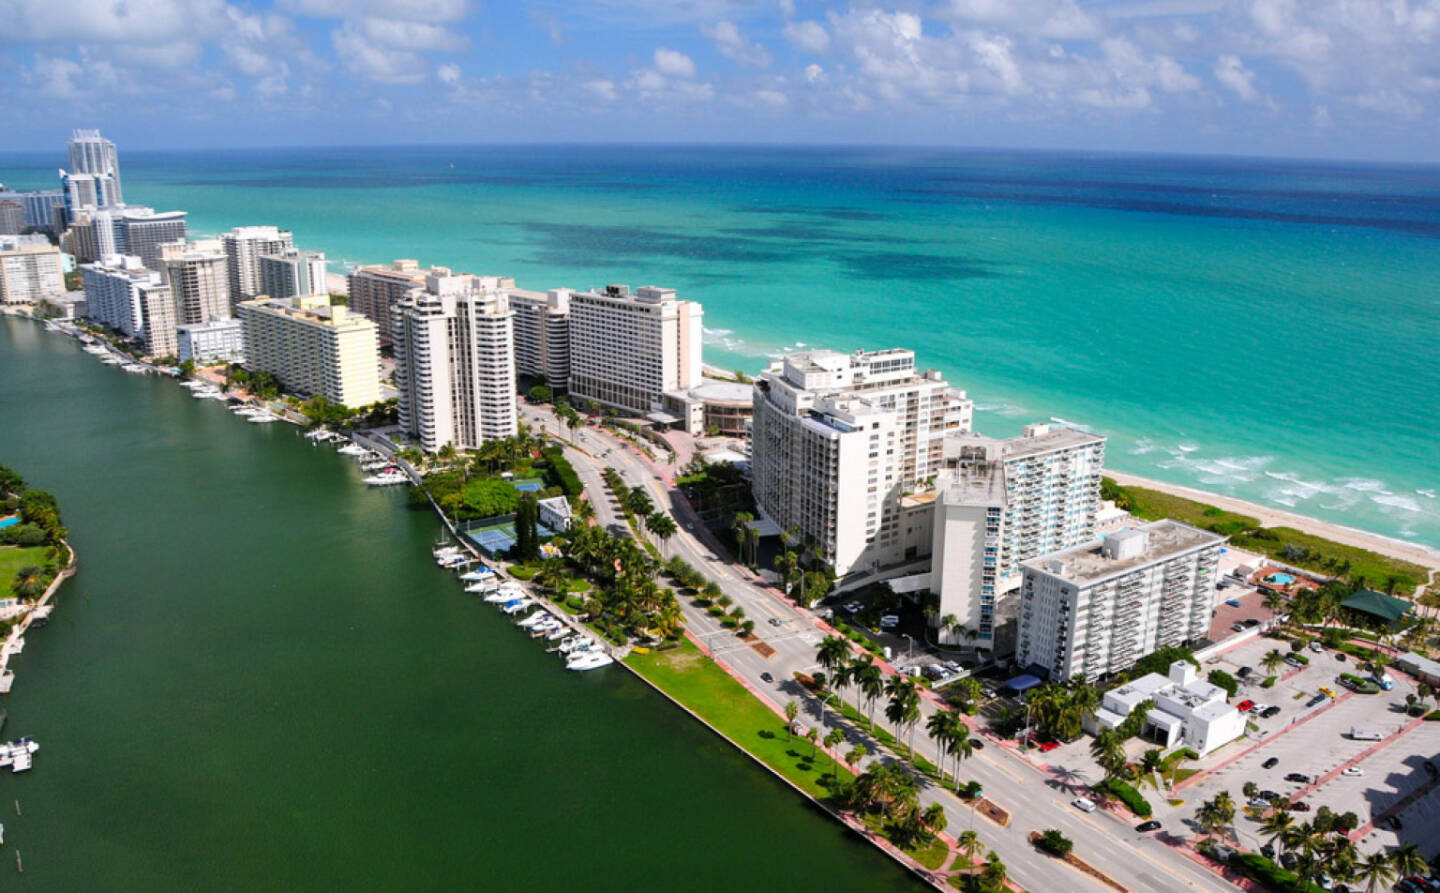 Miami, Floria, USA, http://www.shutterstock.com/de/pic-109905860/stock-photo-aerial-view-of-miami-south-beach-florida-usa.html 